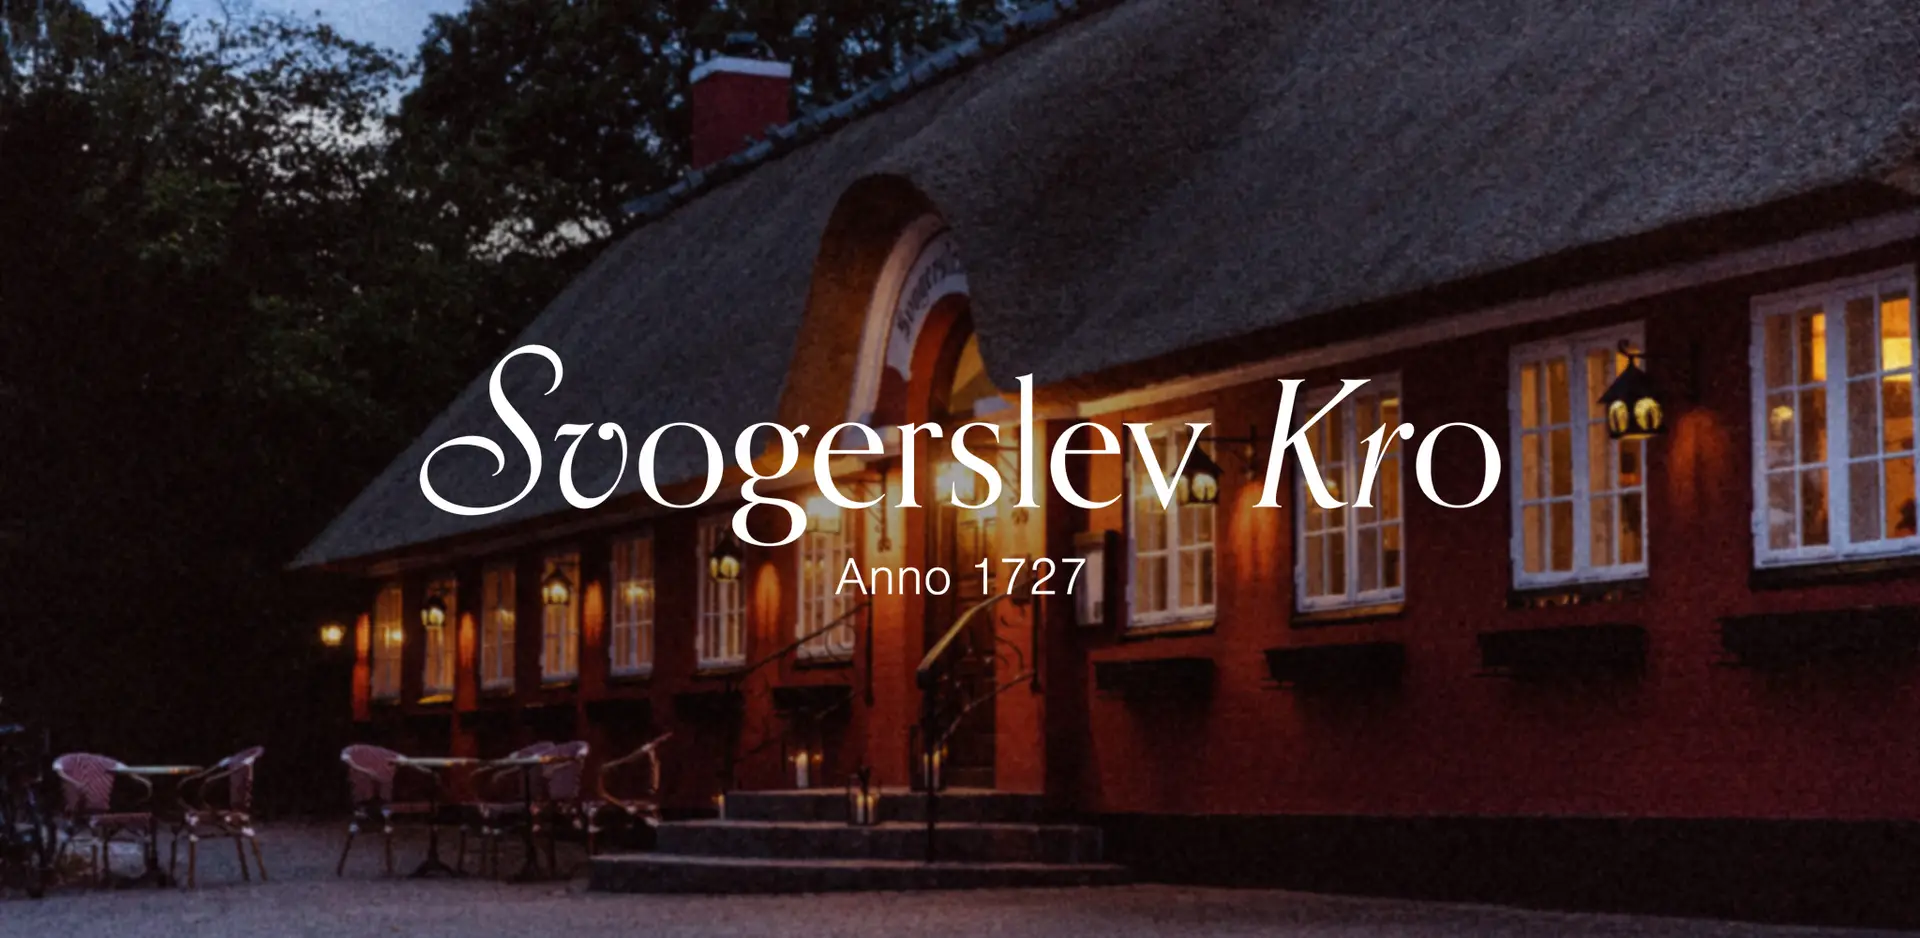 Virksomheds logo for Svogerslev Kro i Roskilde